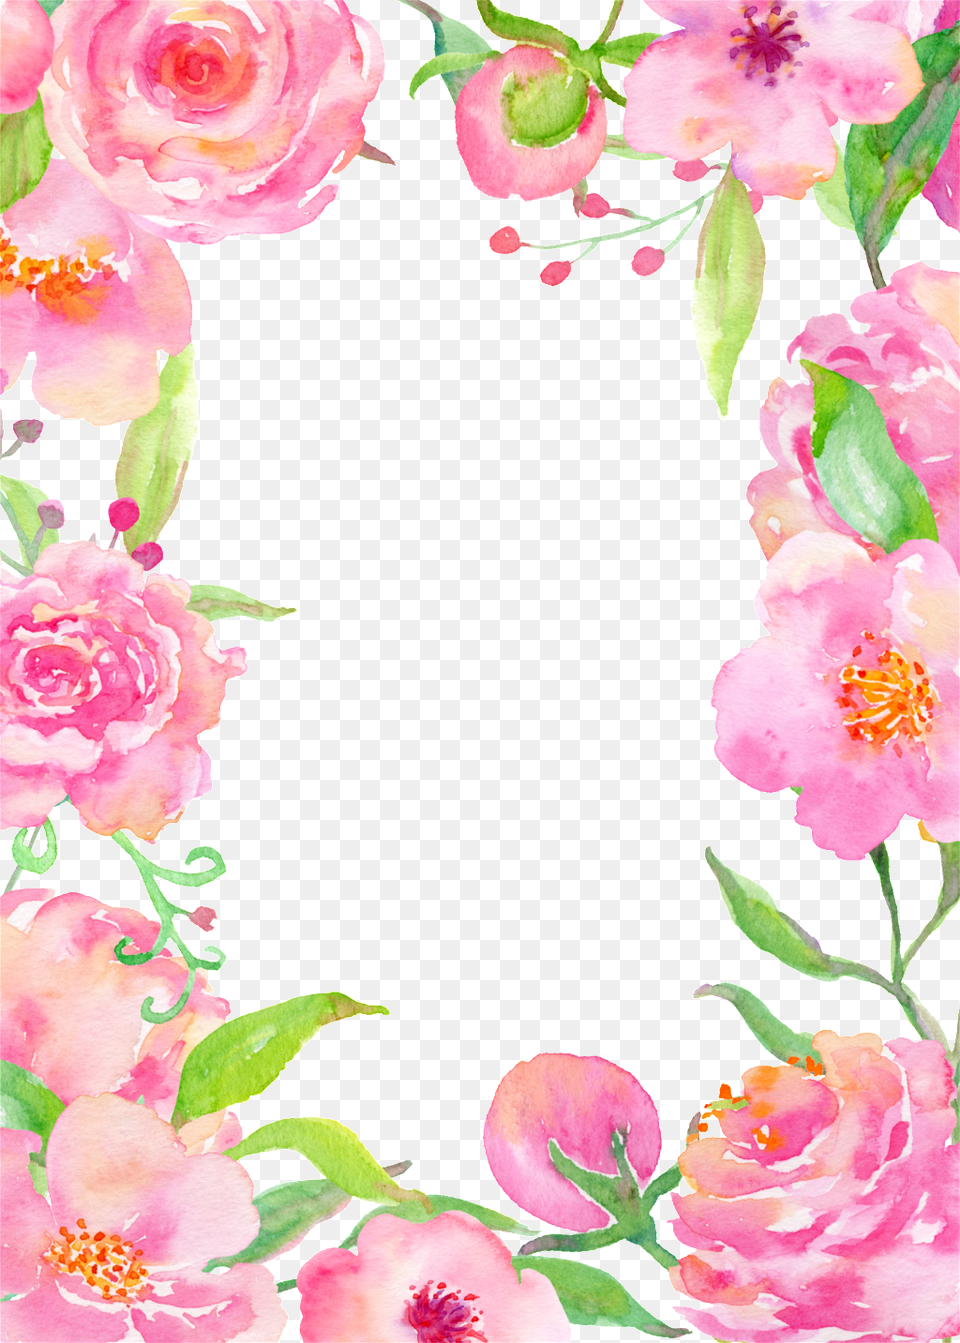 Pink Square Flower Cartoon Transparent Pink, Art, Floral Design, Graphics, Pattern Png Image